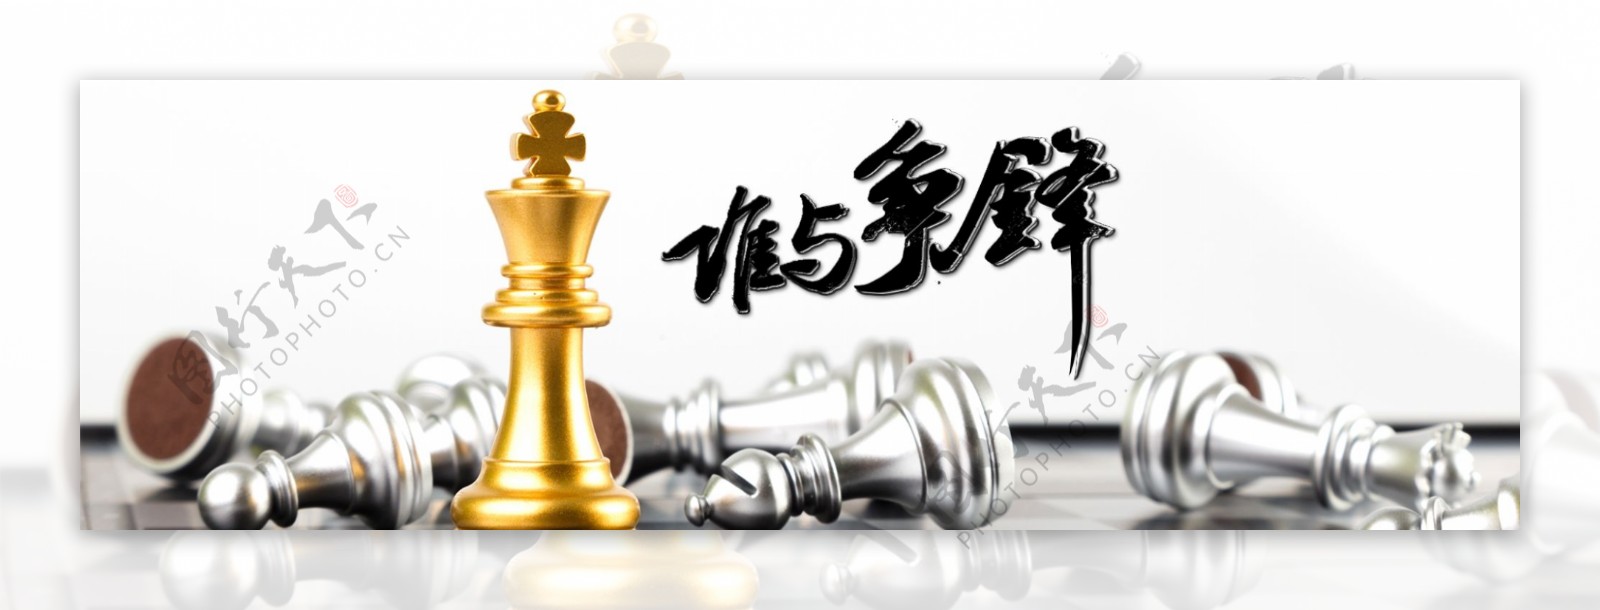 益智游戏国际象棋网页banner